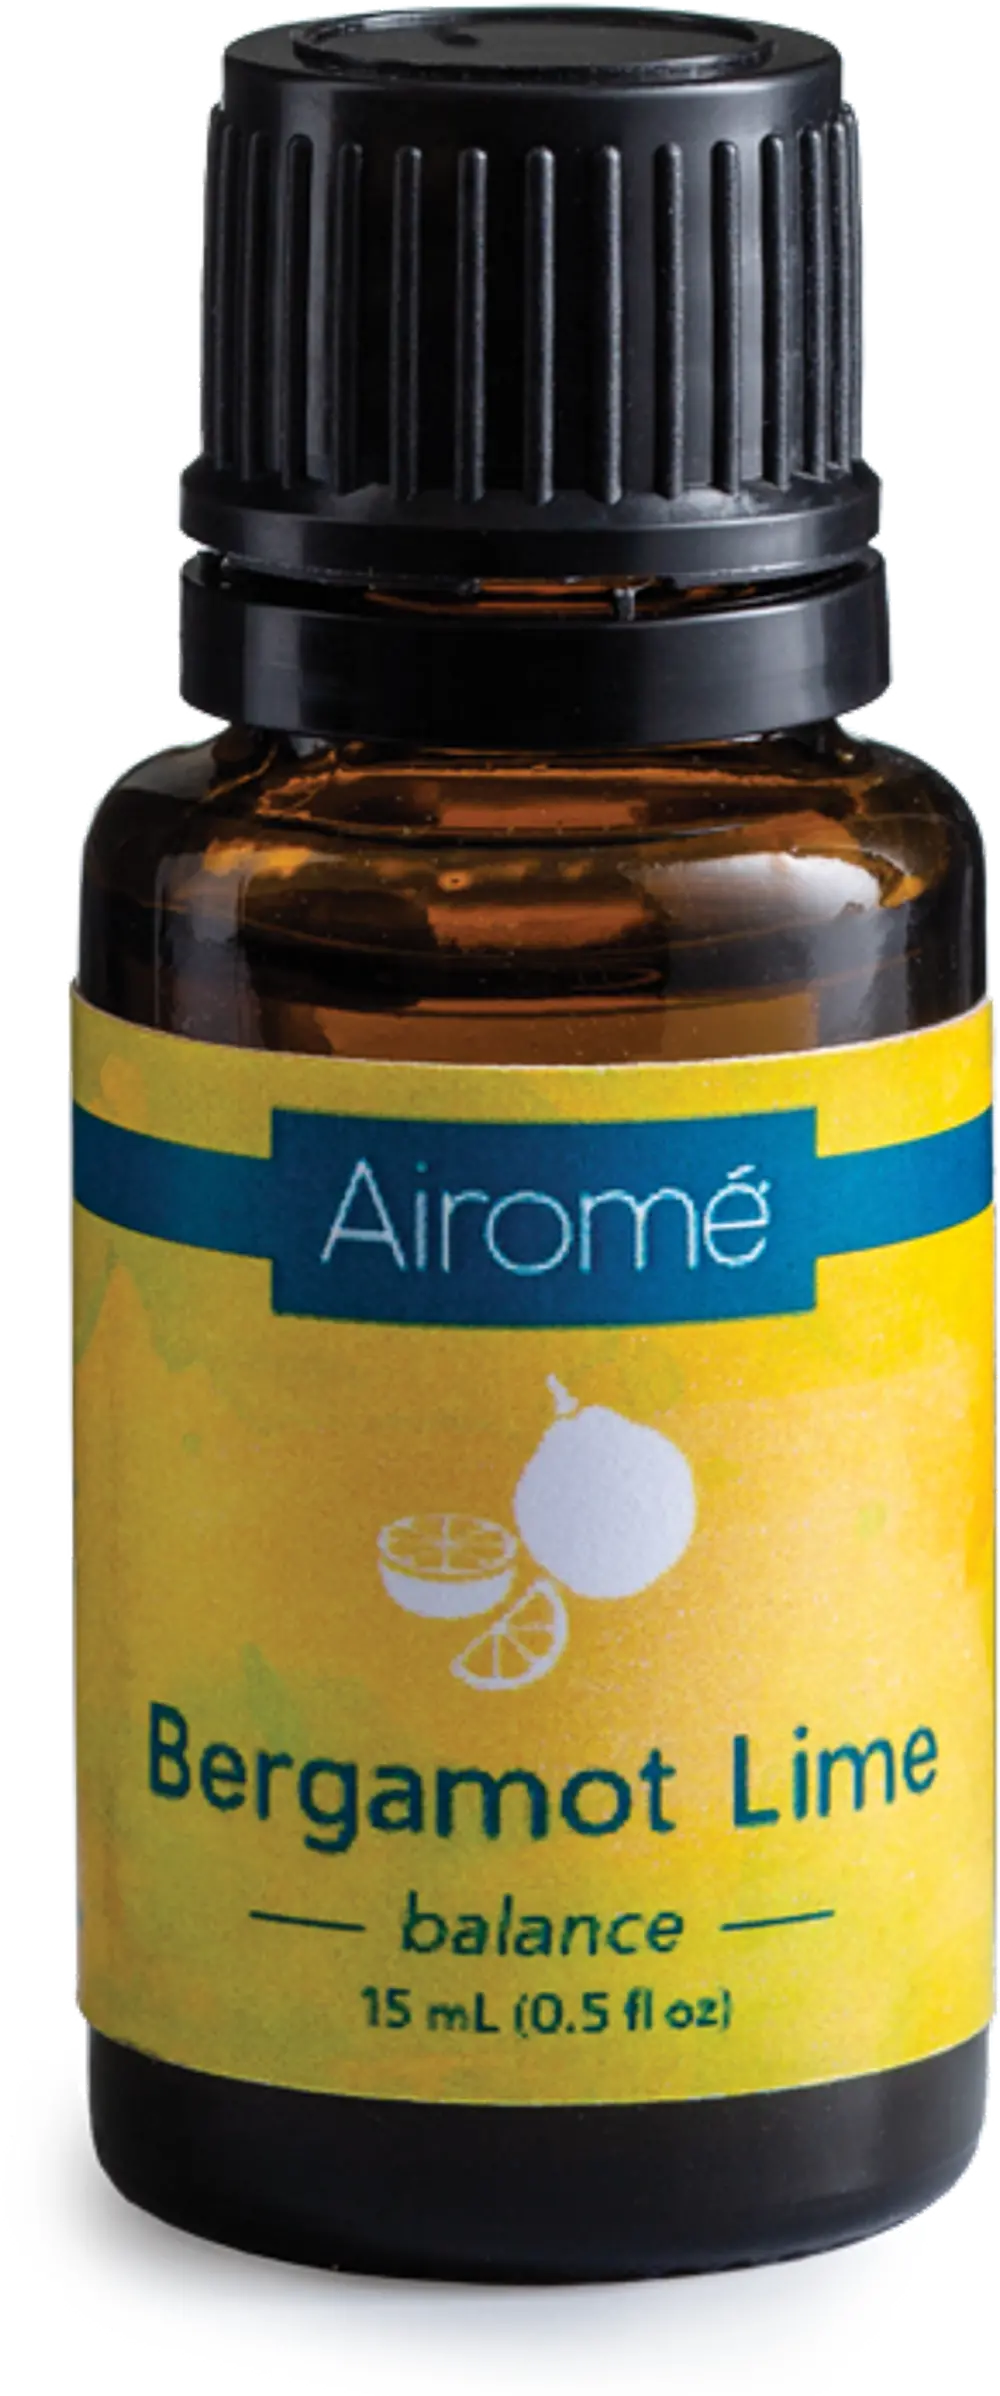 Bergamot Lime 15ml Airome Essential Oil Blend-1